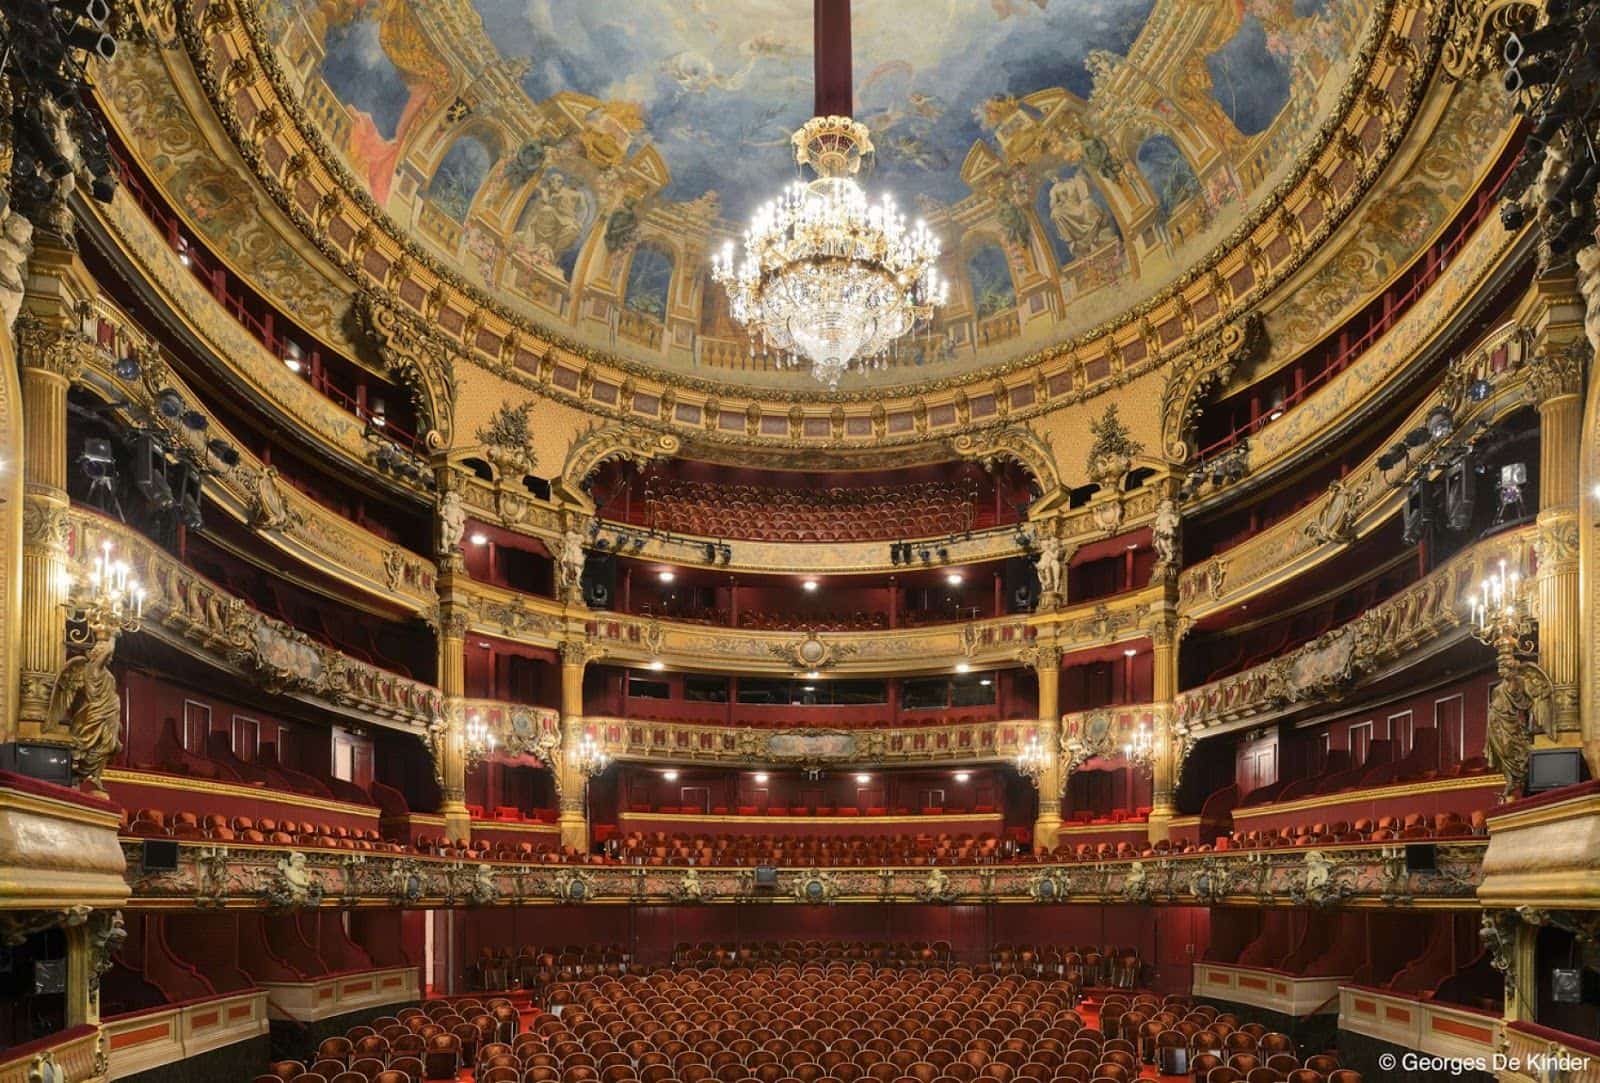 Buenos Aires' Opera House main auditorium